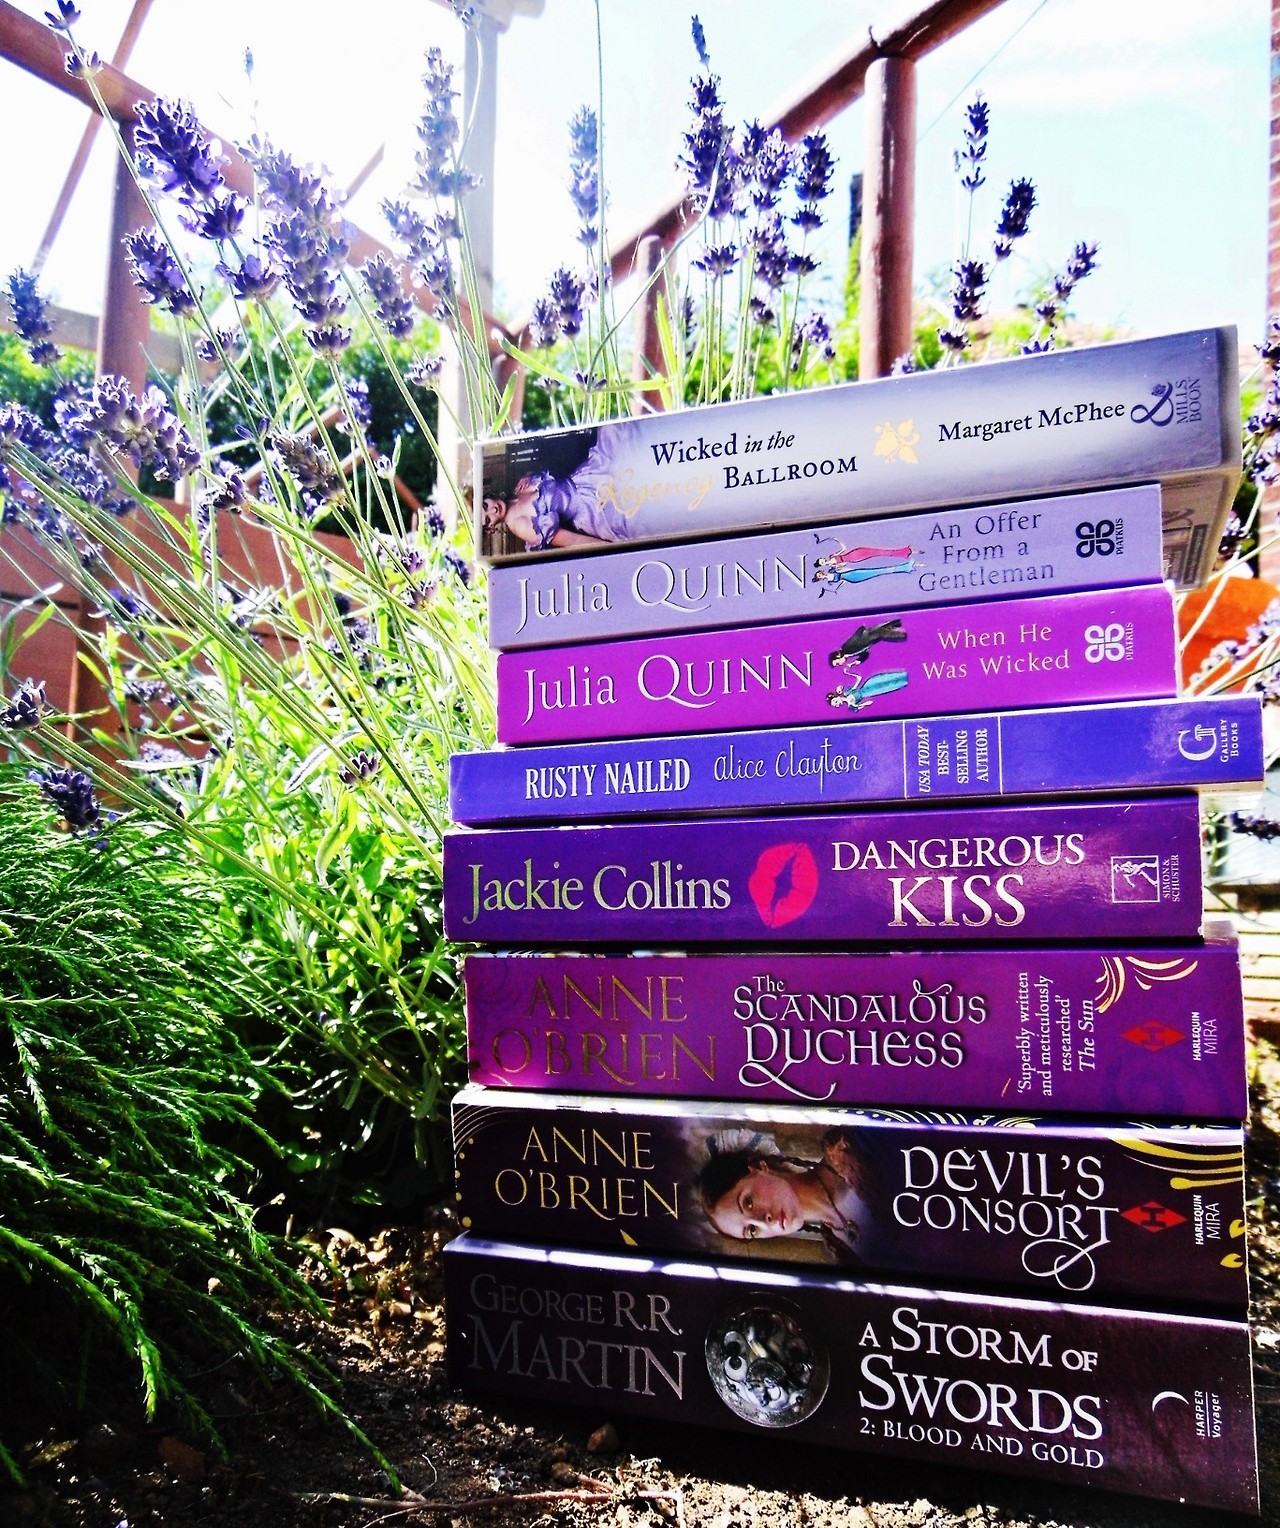 abooknerdstales:
“Lavender Book Stack
”